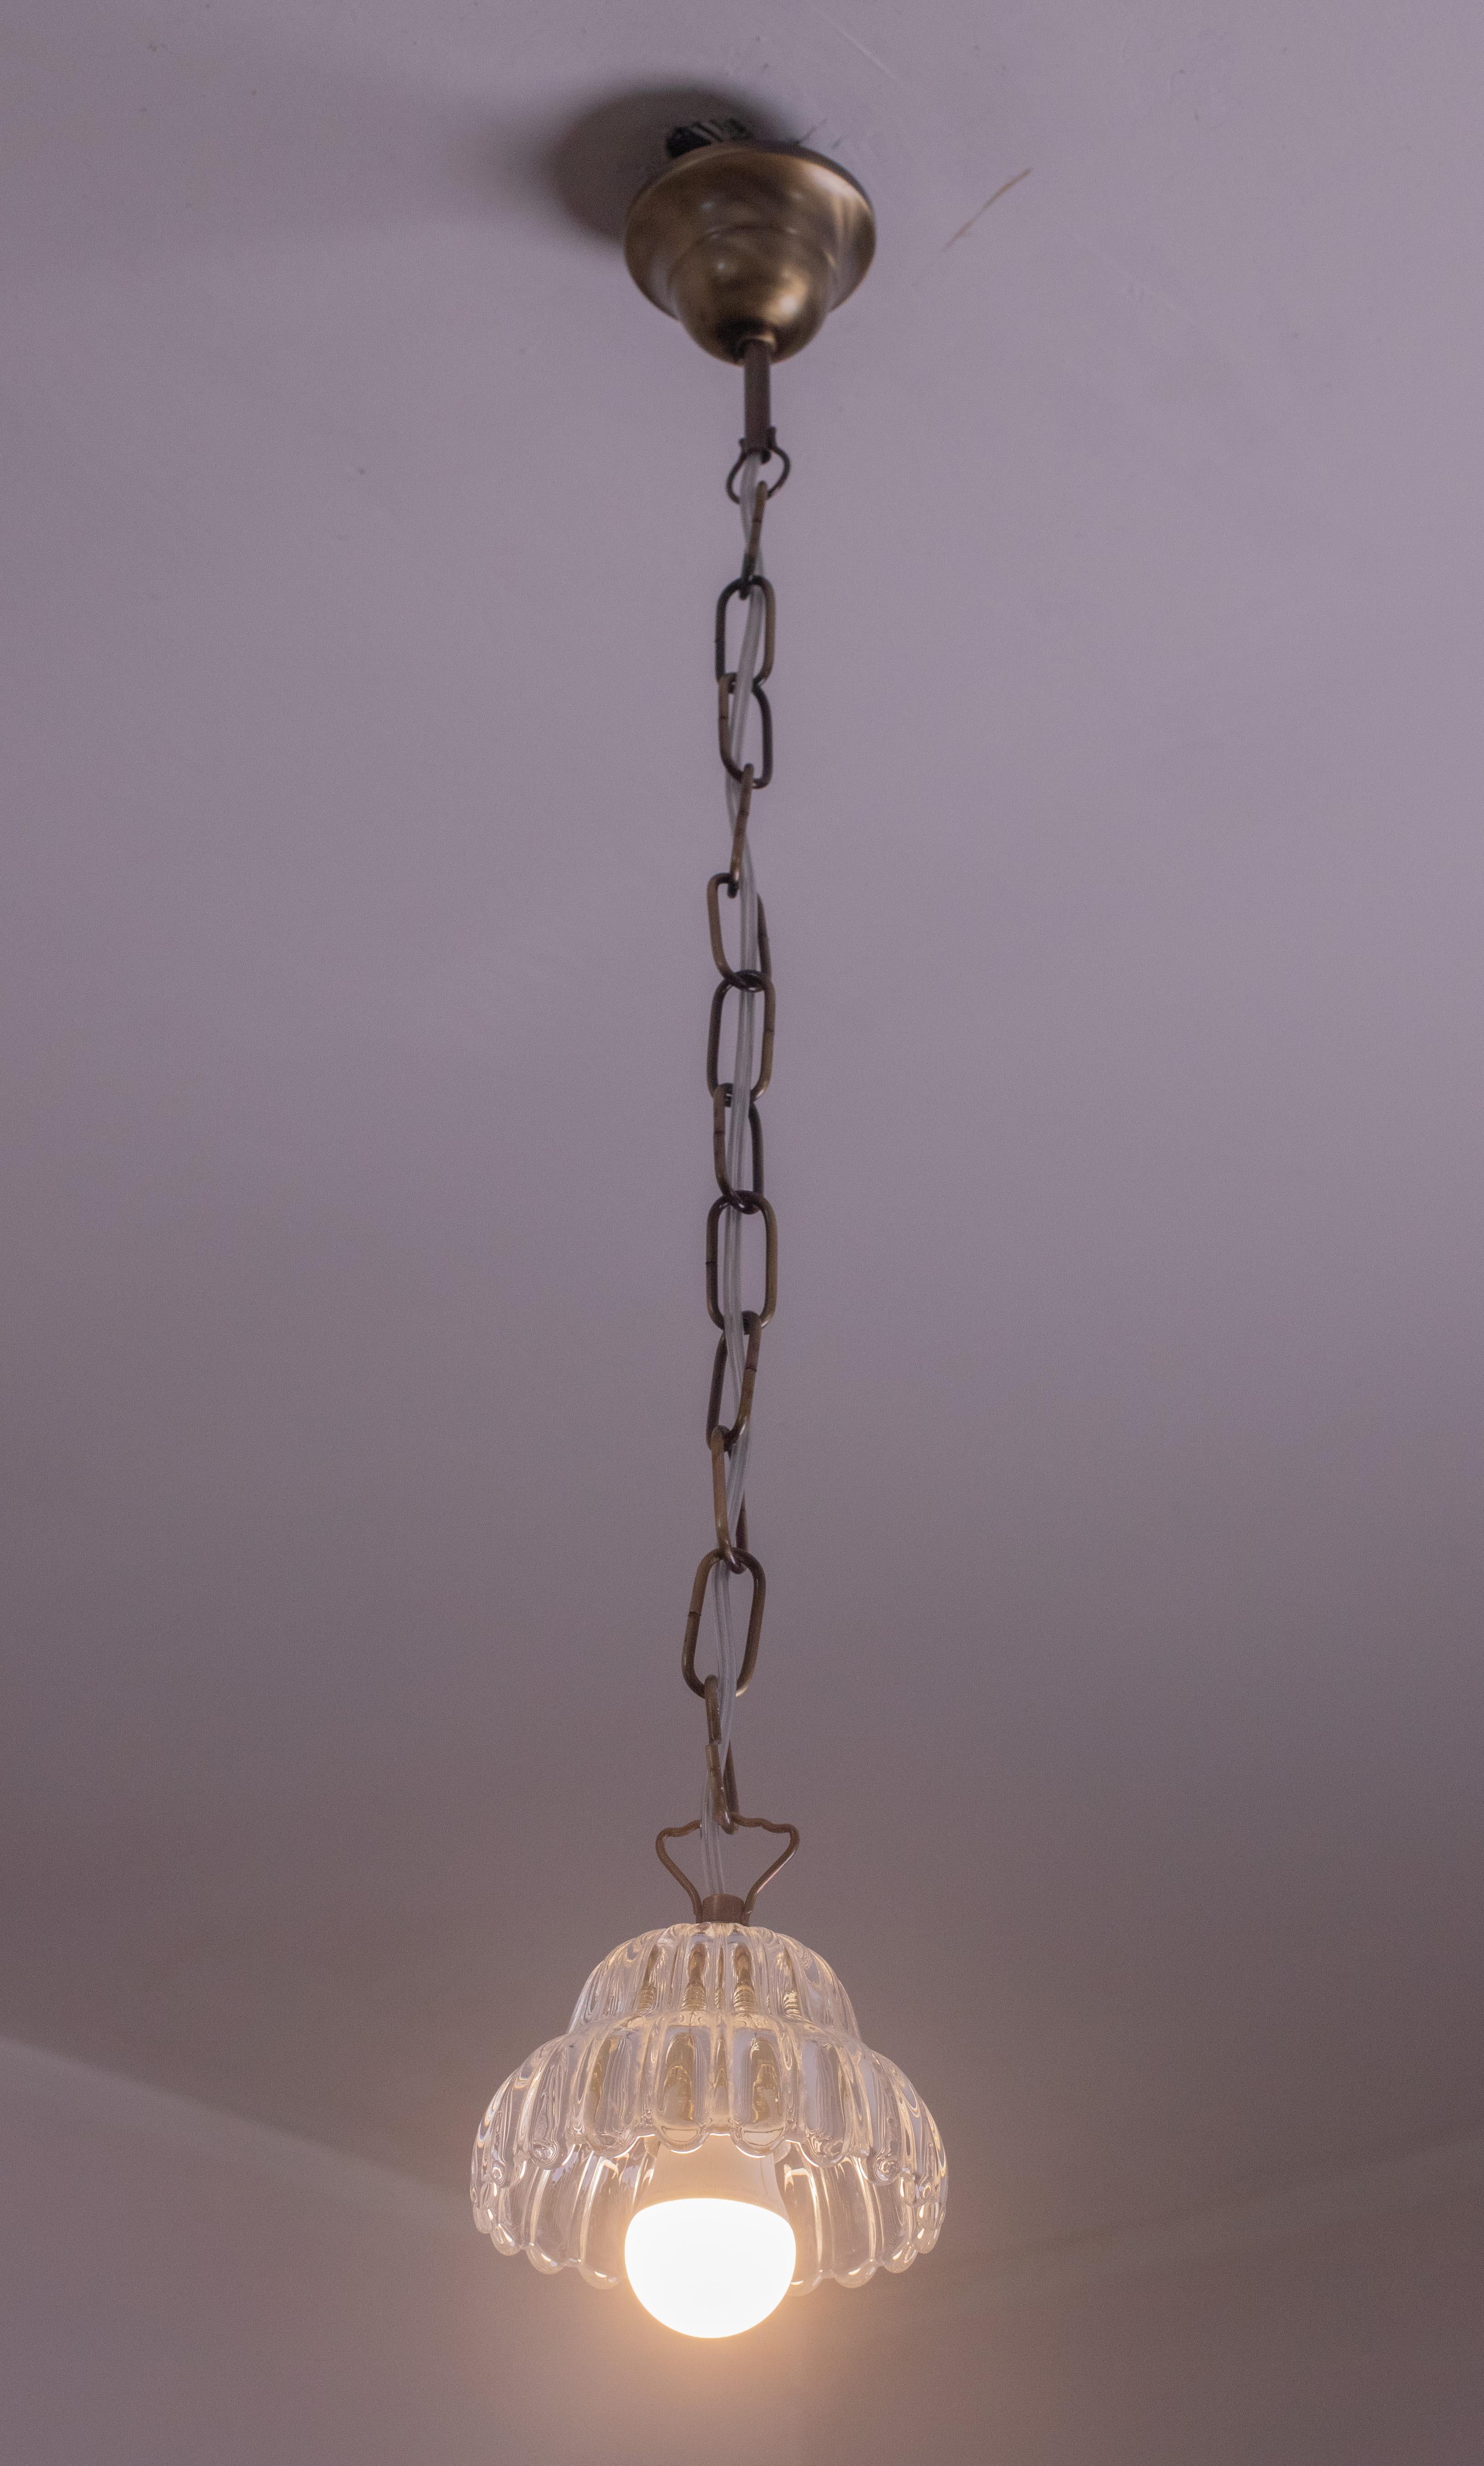 Jolie suspension Murano attribuée aux verreries Barovier&Toso, adaptée à la décoration d'un petit espace.

Période : vers 1950.

Une lumière e27 norme européenne.

Hauteur 80 centimètres.

Diamètre du gobelet : 12 centimètres.

Un verre